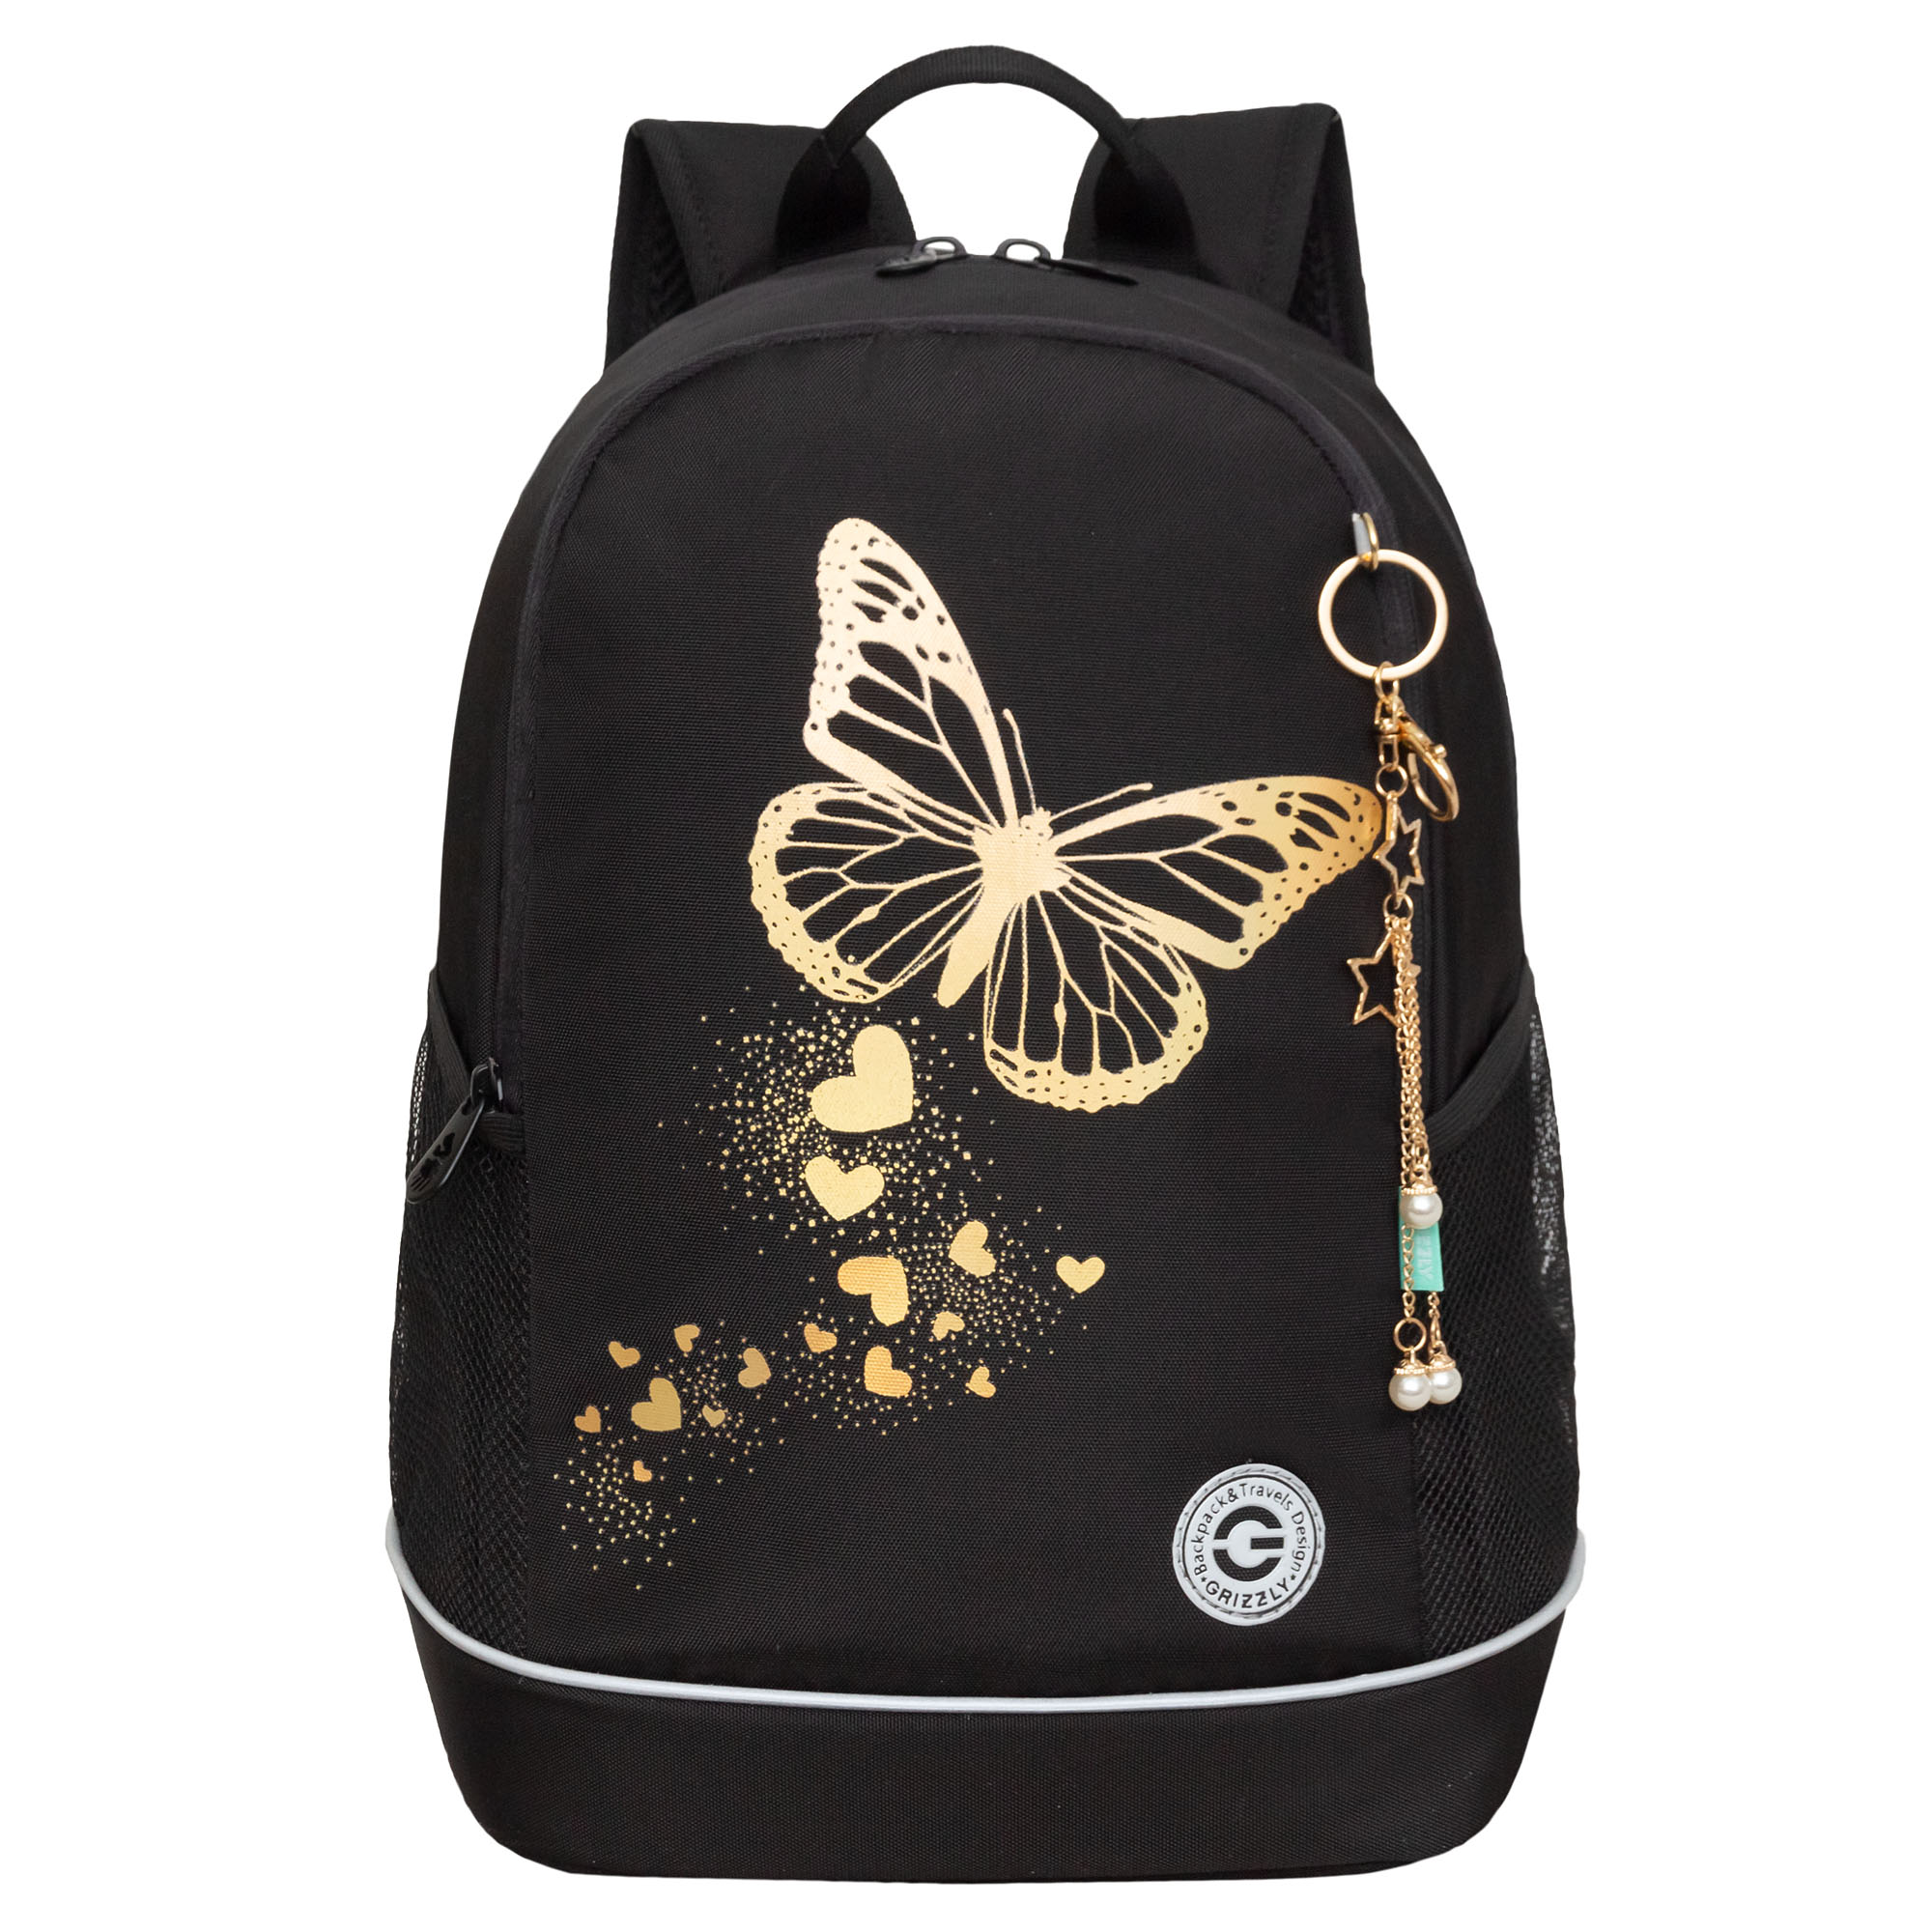 Рюкзак школьный GRIZZLY с карманом для ноутбука 13, 2 отделения, для девочки RG-463-5, 1